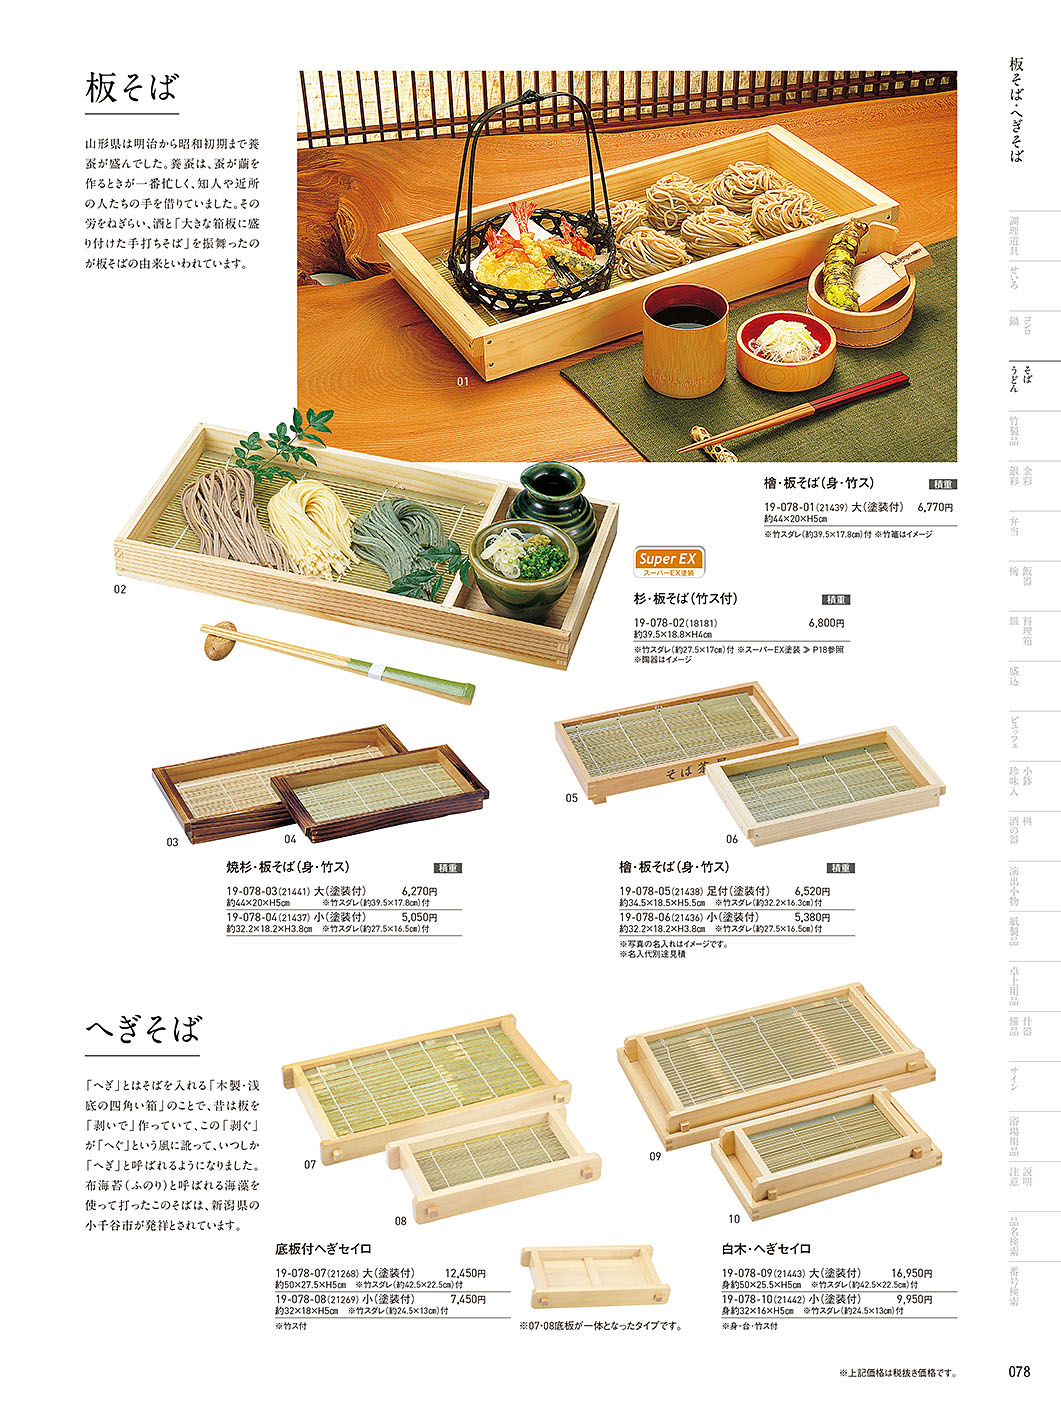 和食器カタログ P.78-そば･うどん／そば器･板そば･ヘギセイロ